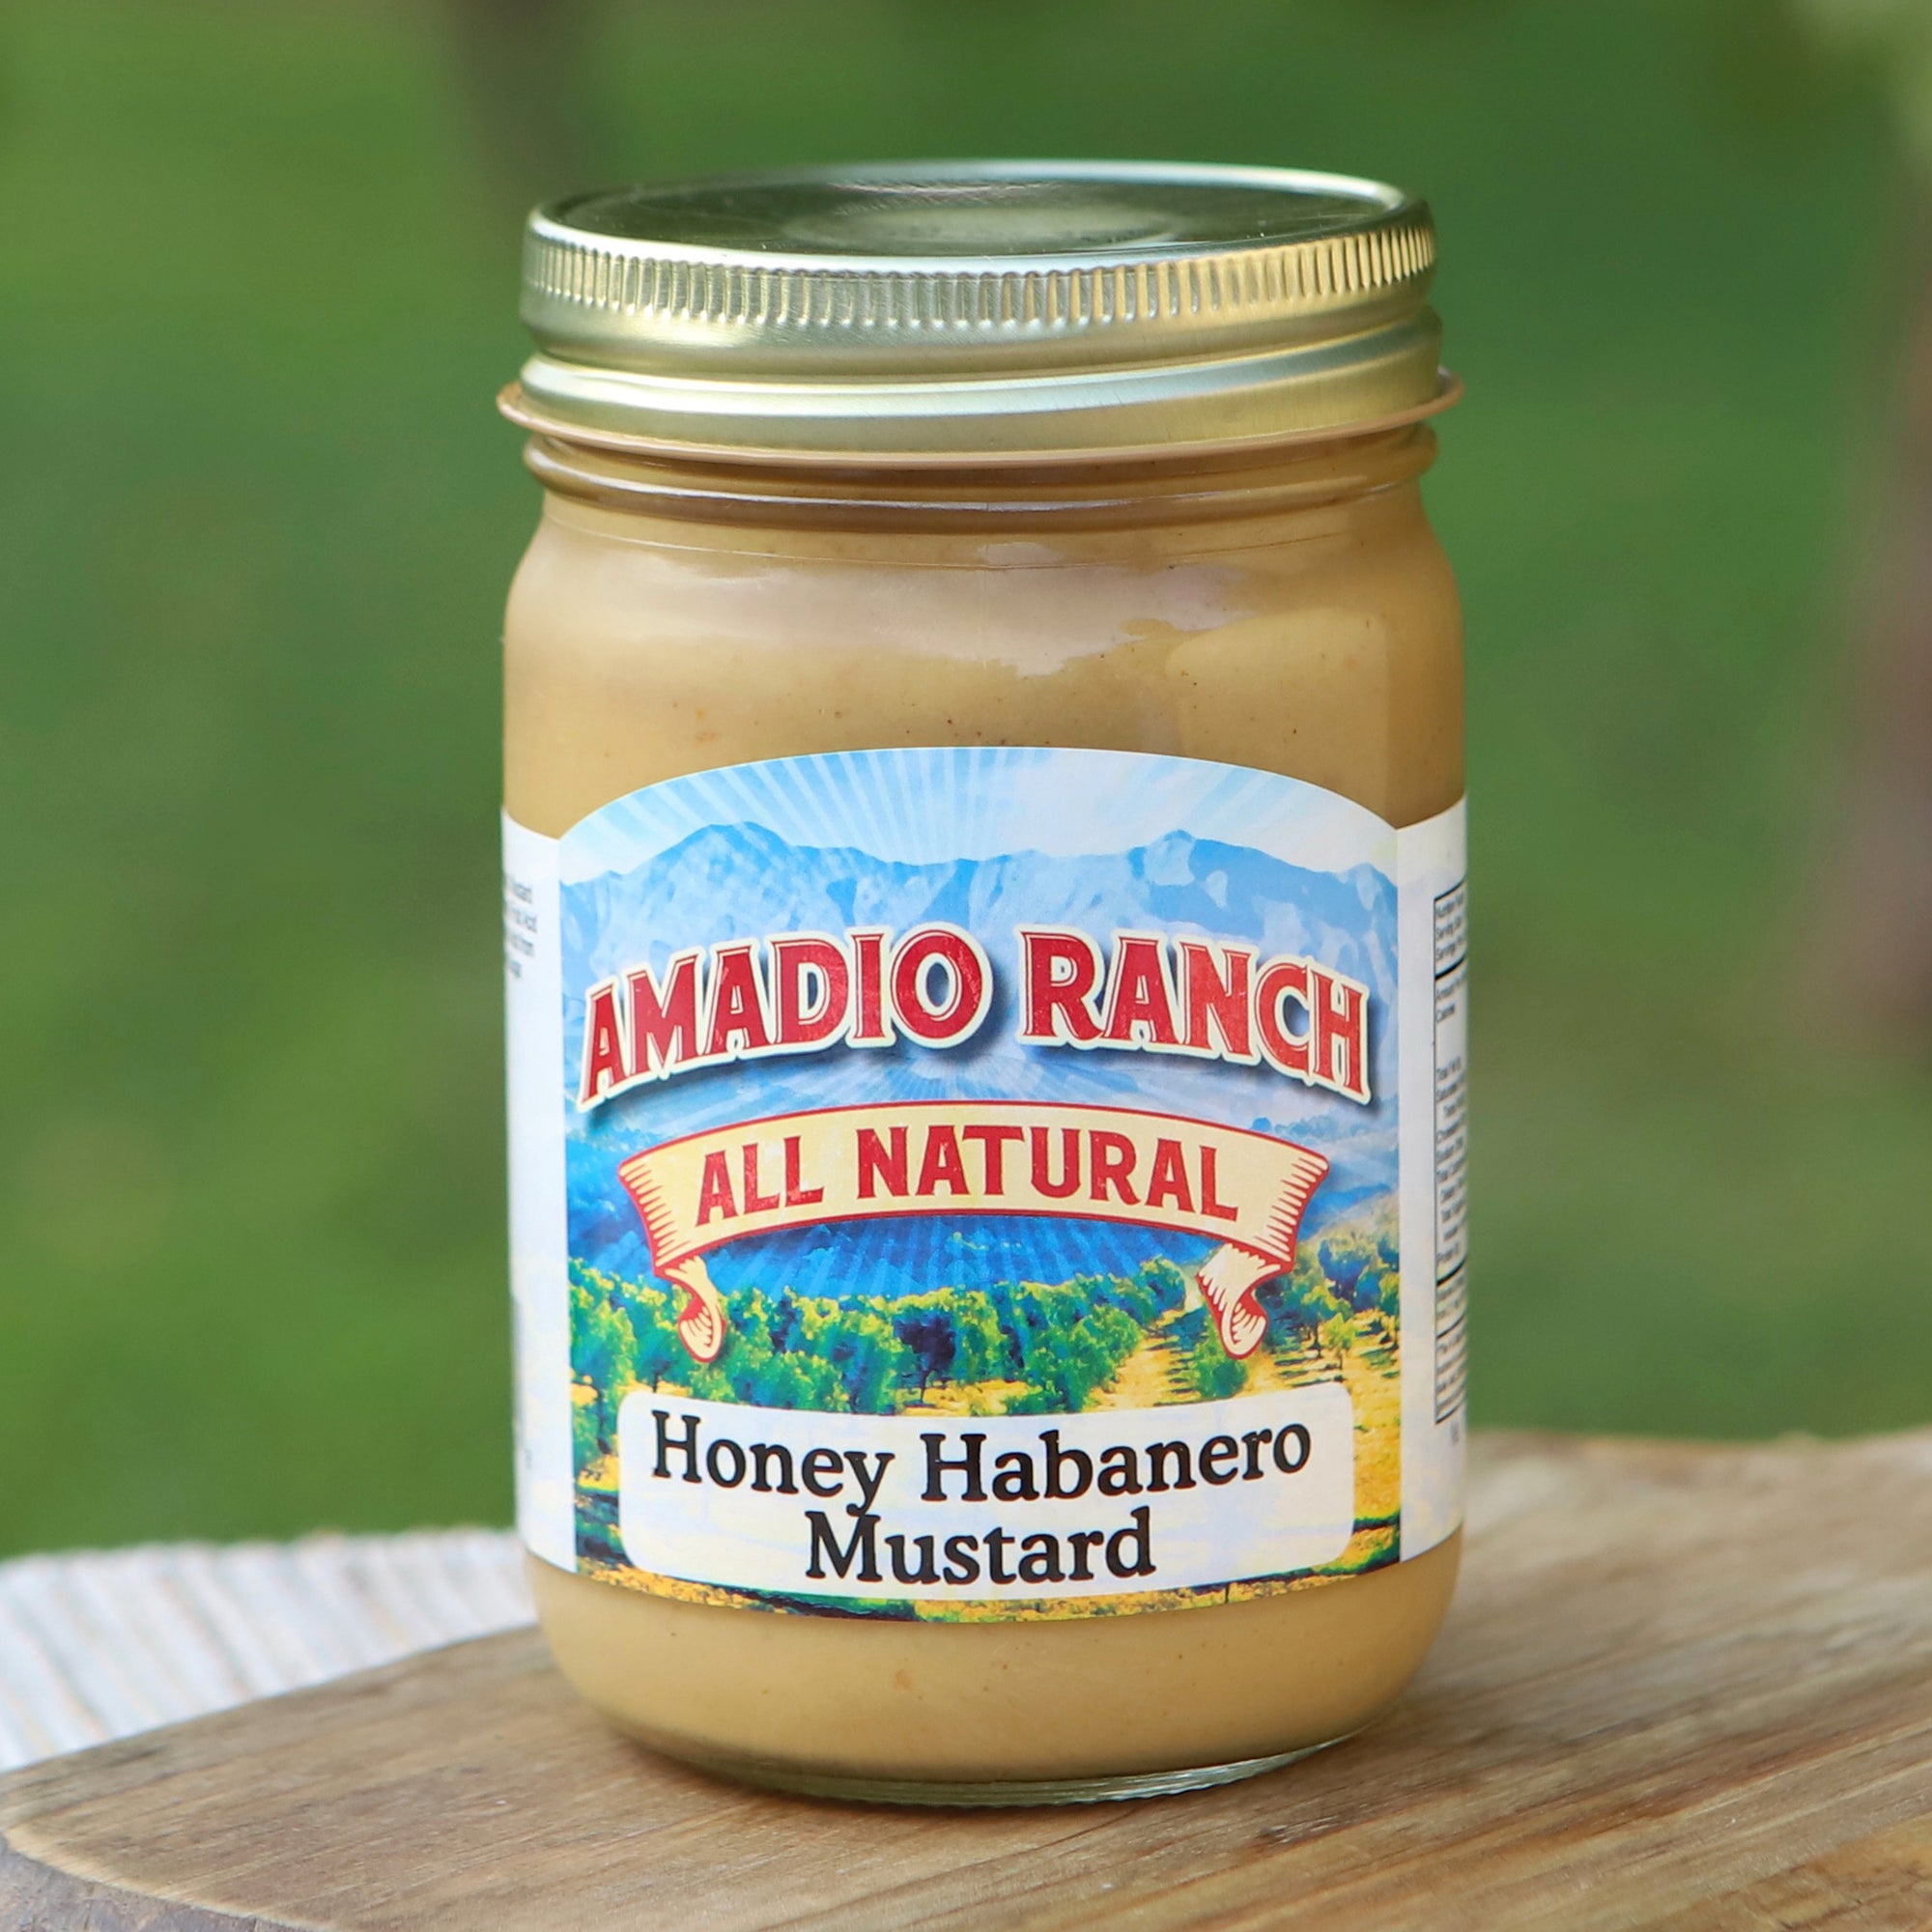 Honey Habanero Mustard